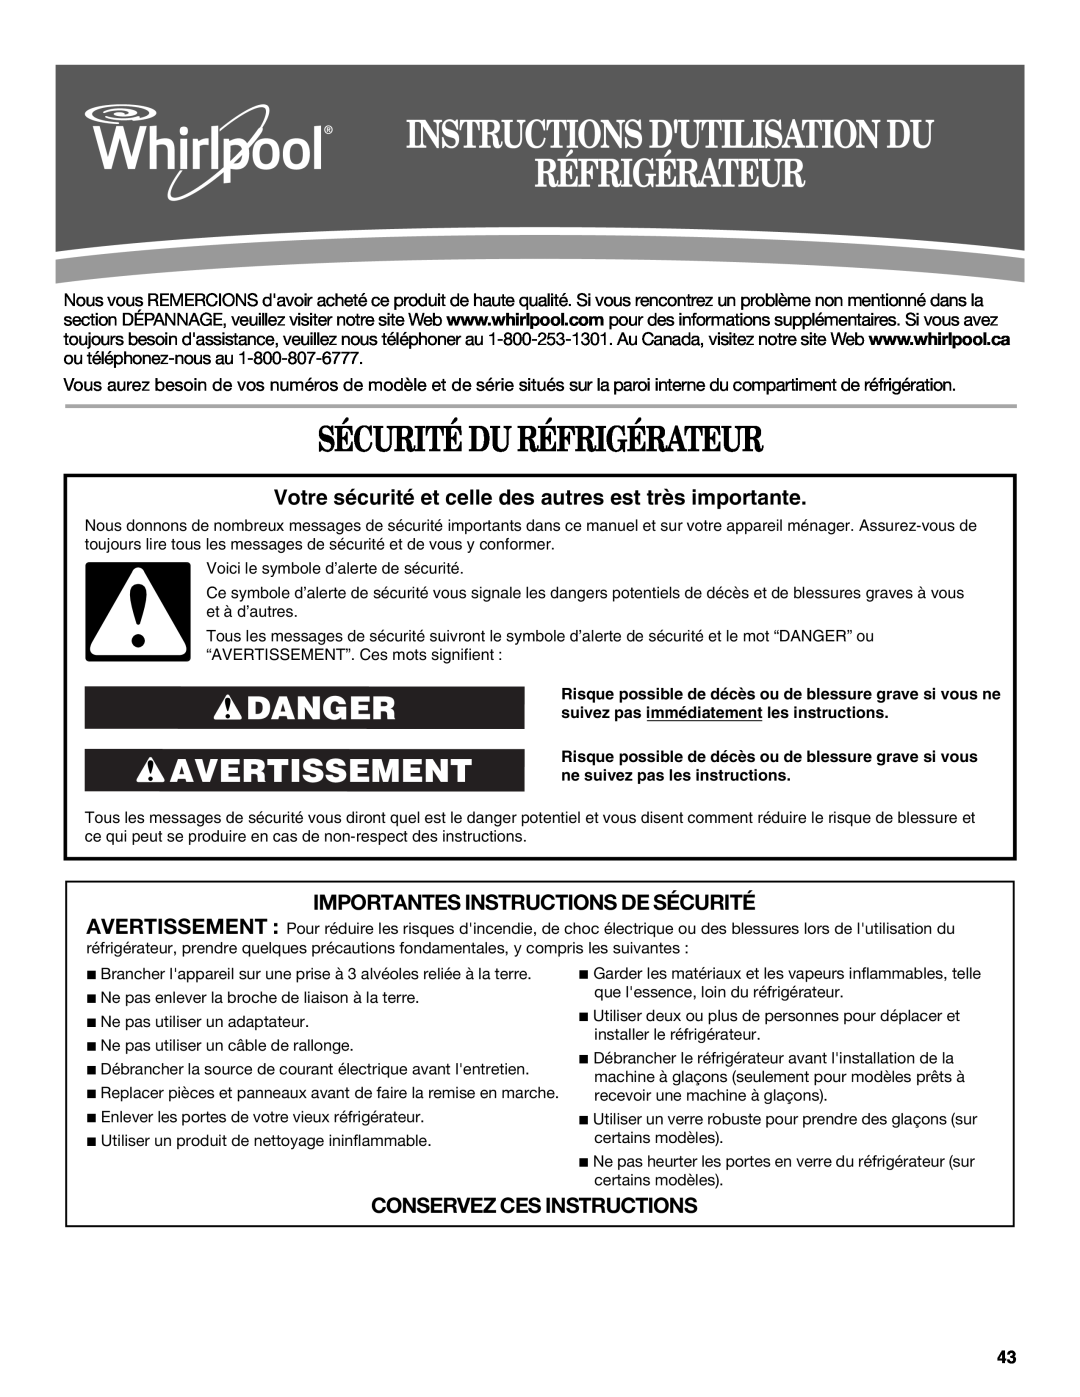 Whirlpool WSF26C2EXF Instructions Dutilisation Du Réfrigérateur, Sécurité Du Réfrigérateur, Danger Avertissement 